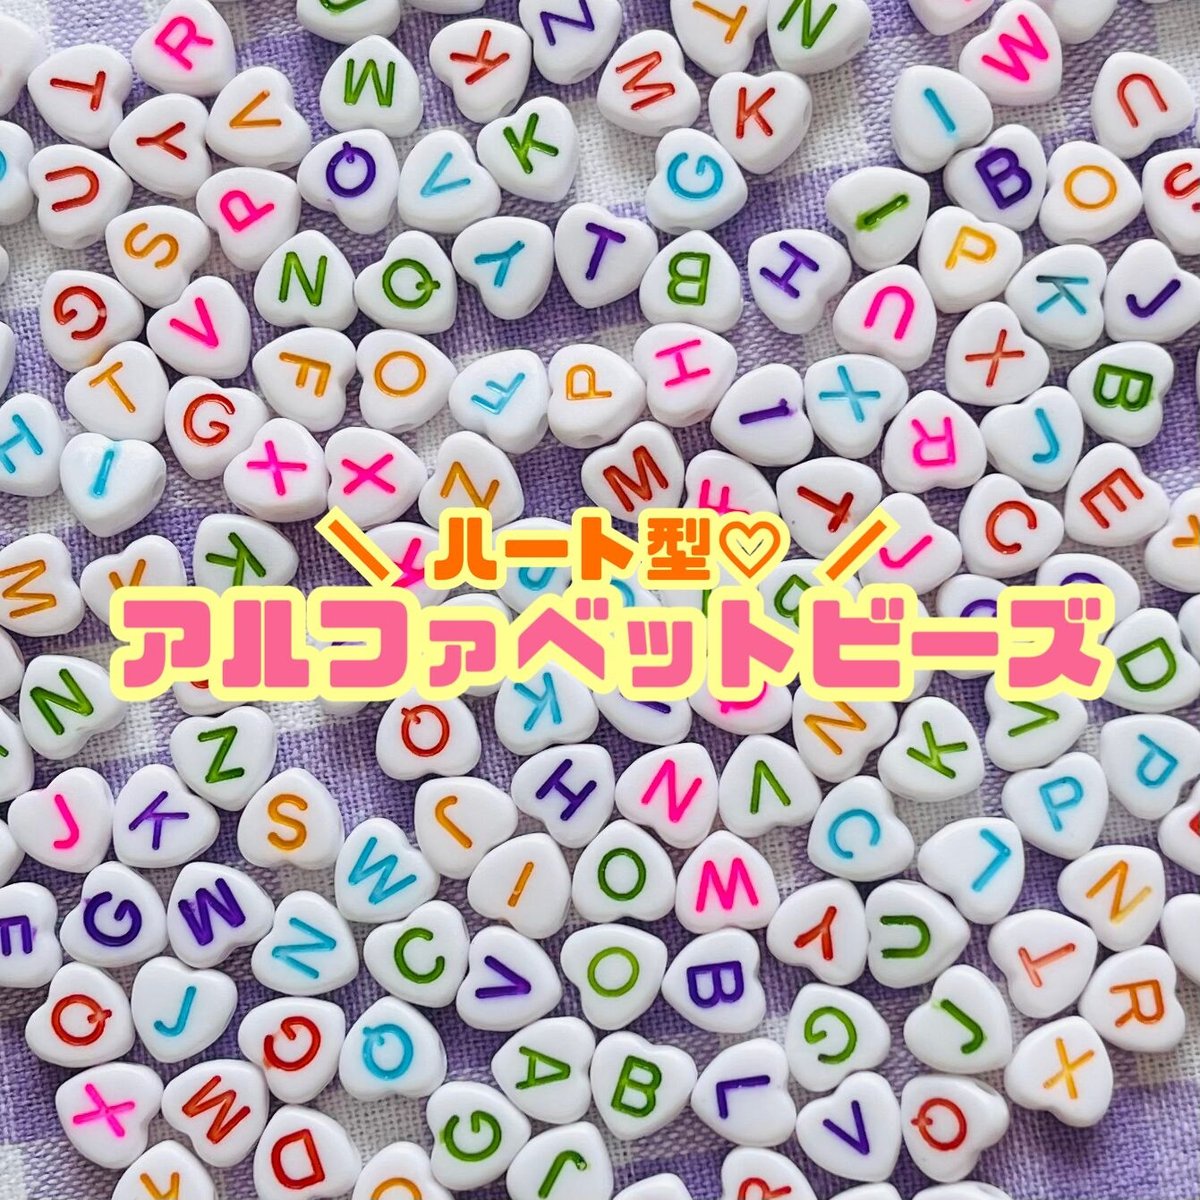 COHEALI 1 Box Letter Beads Letter Bead Kit Letters for Bracelets Beads  Letters Beads for Bracelets Letters Alphabet Beads for Bracelets Making